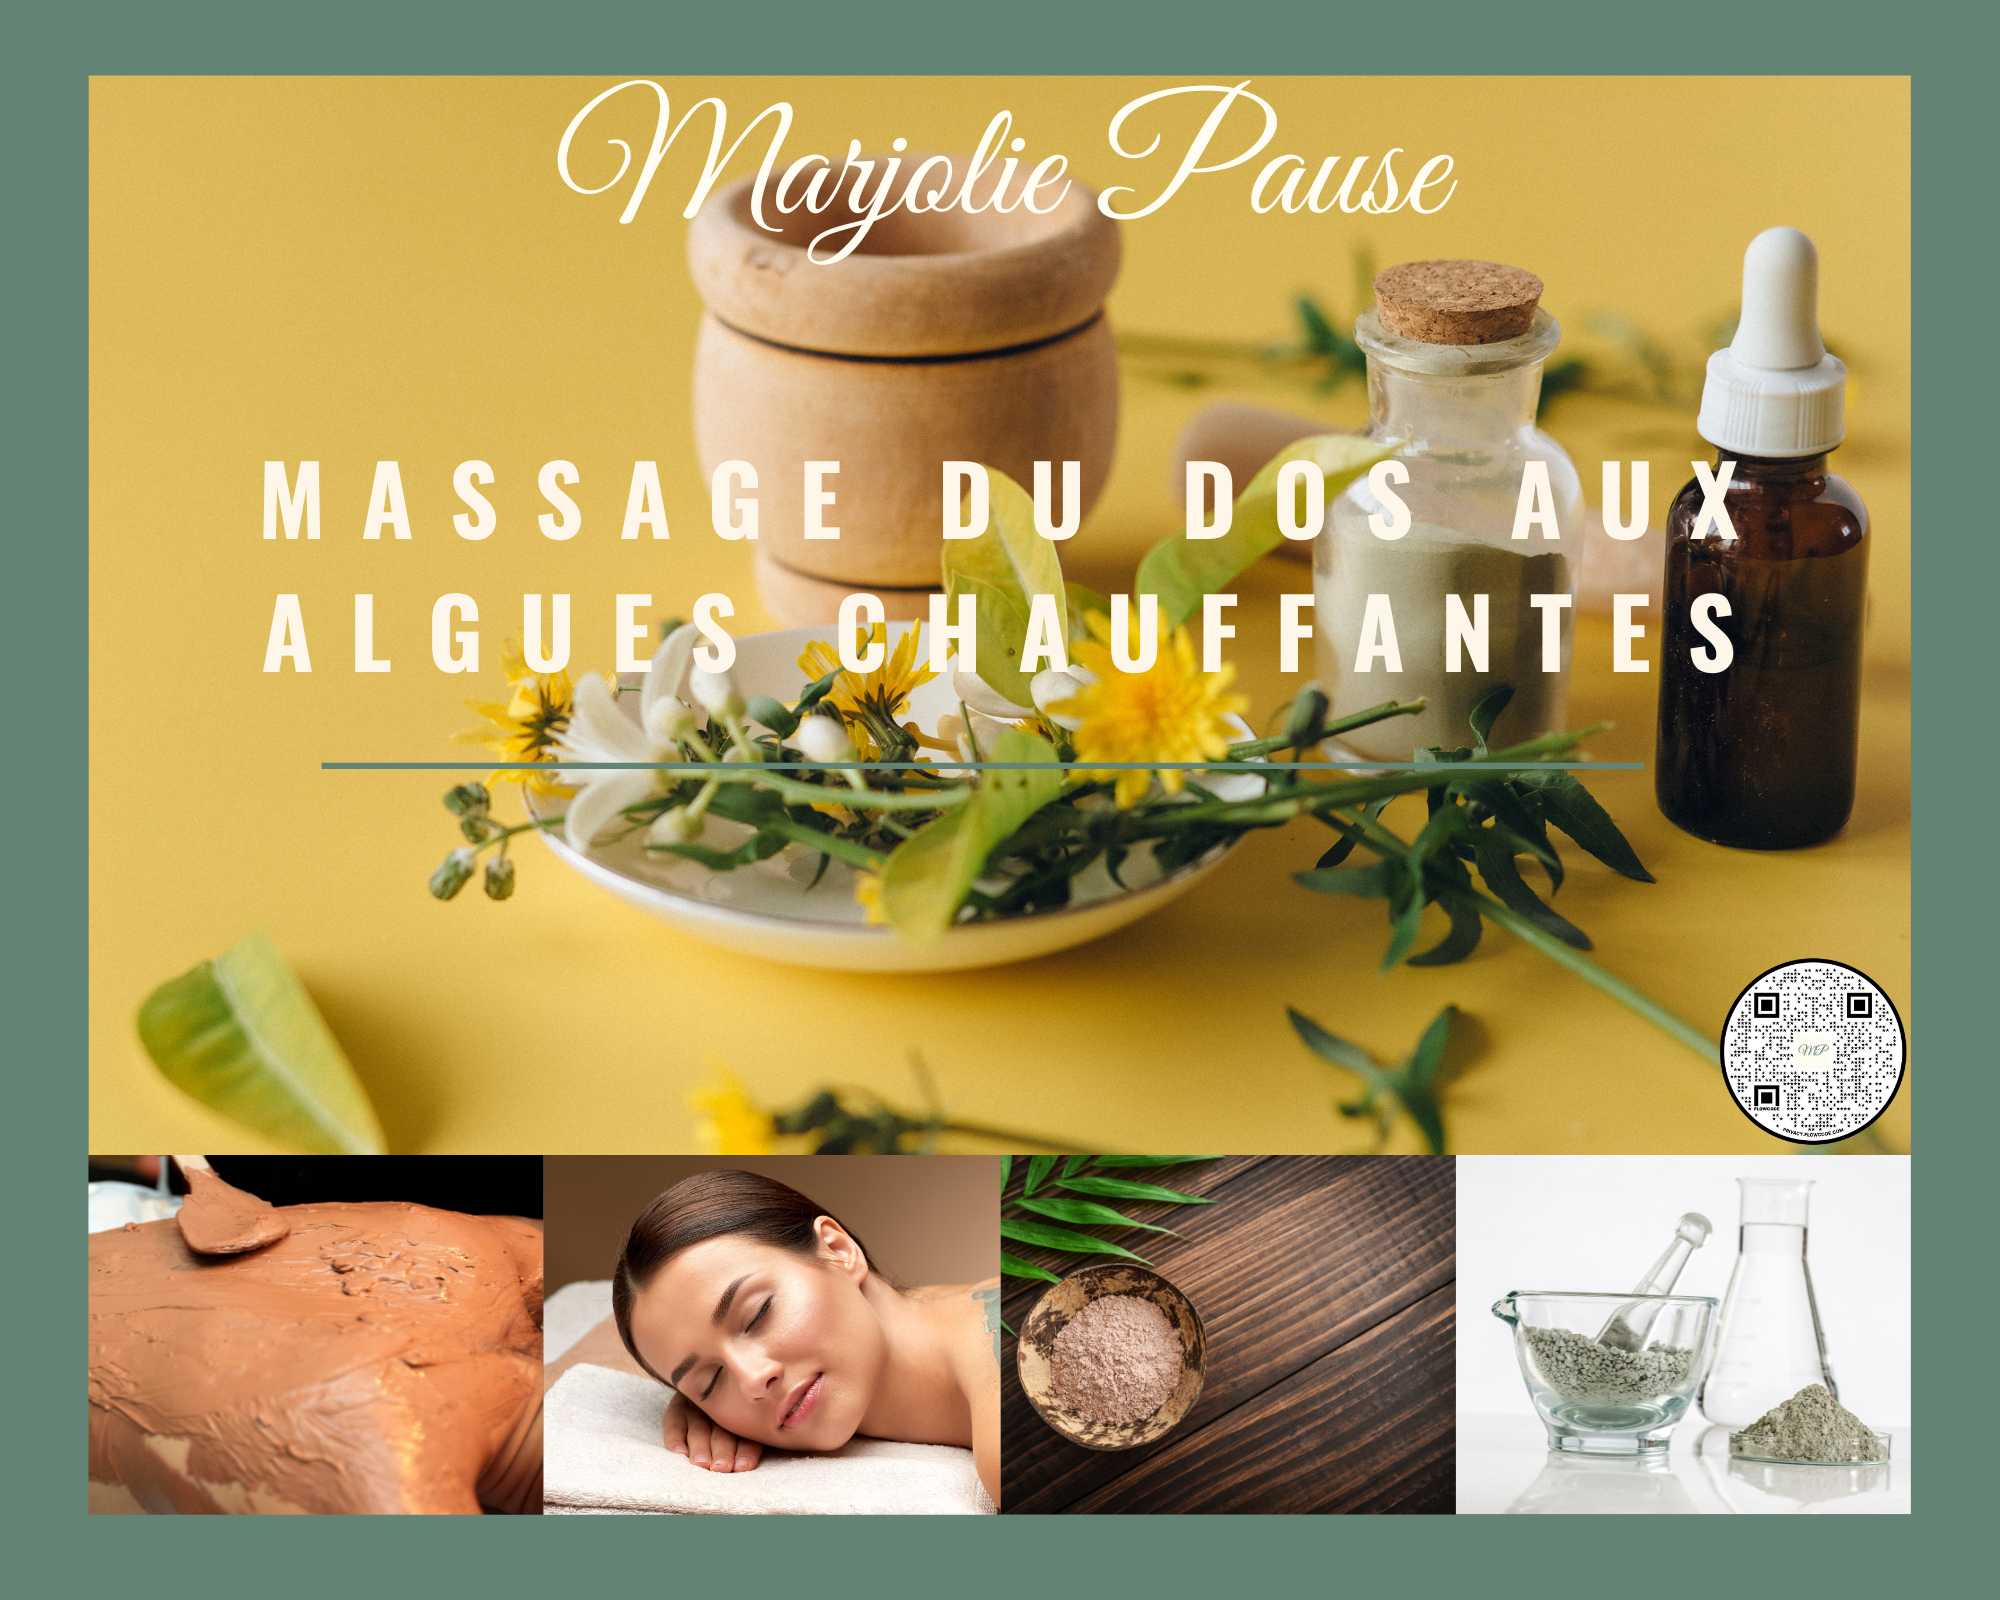 Promotion Exceptionnelle sur le Massage du Dos chez Marjolie Pause à gardanne